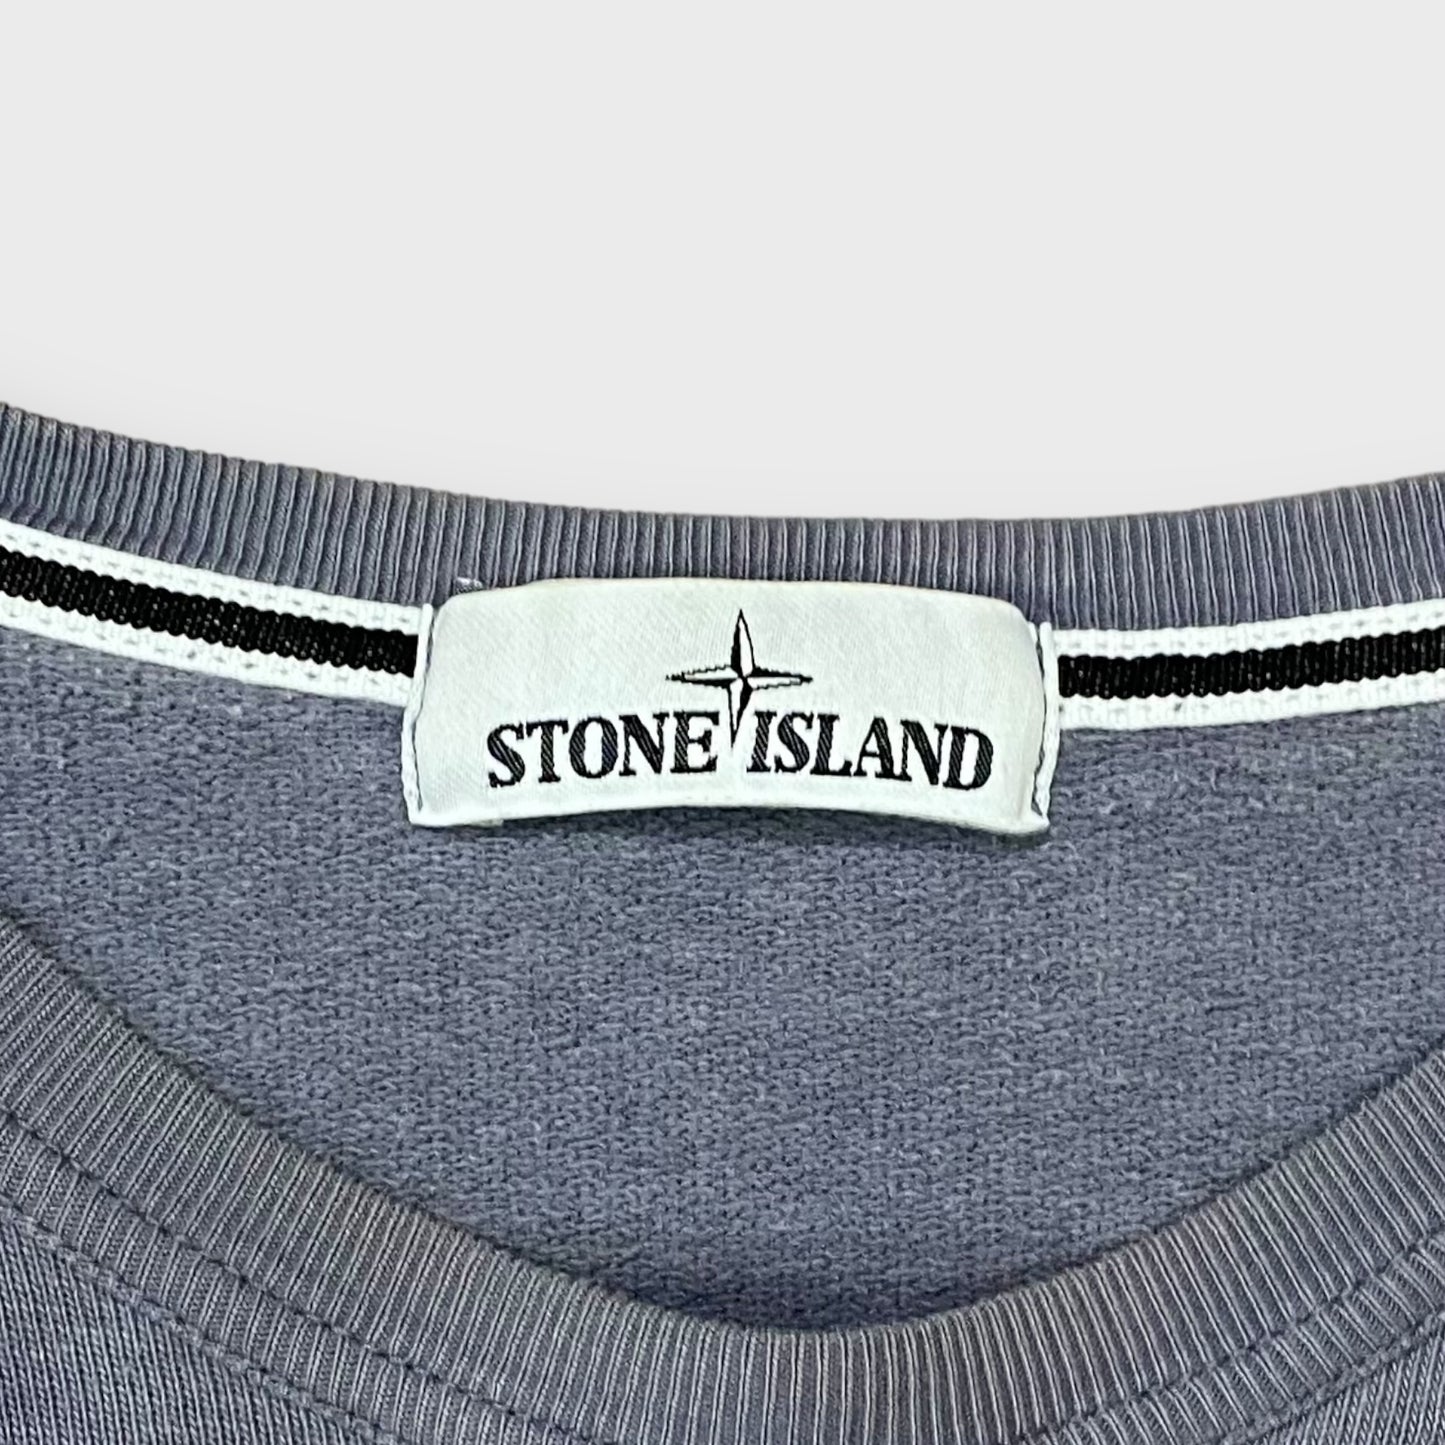 00's "Stone island" l/s t-shirt